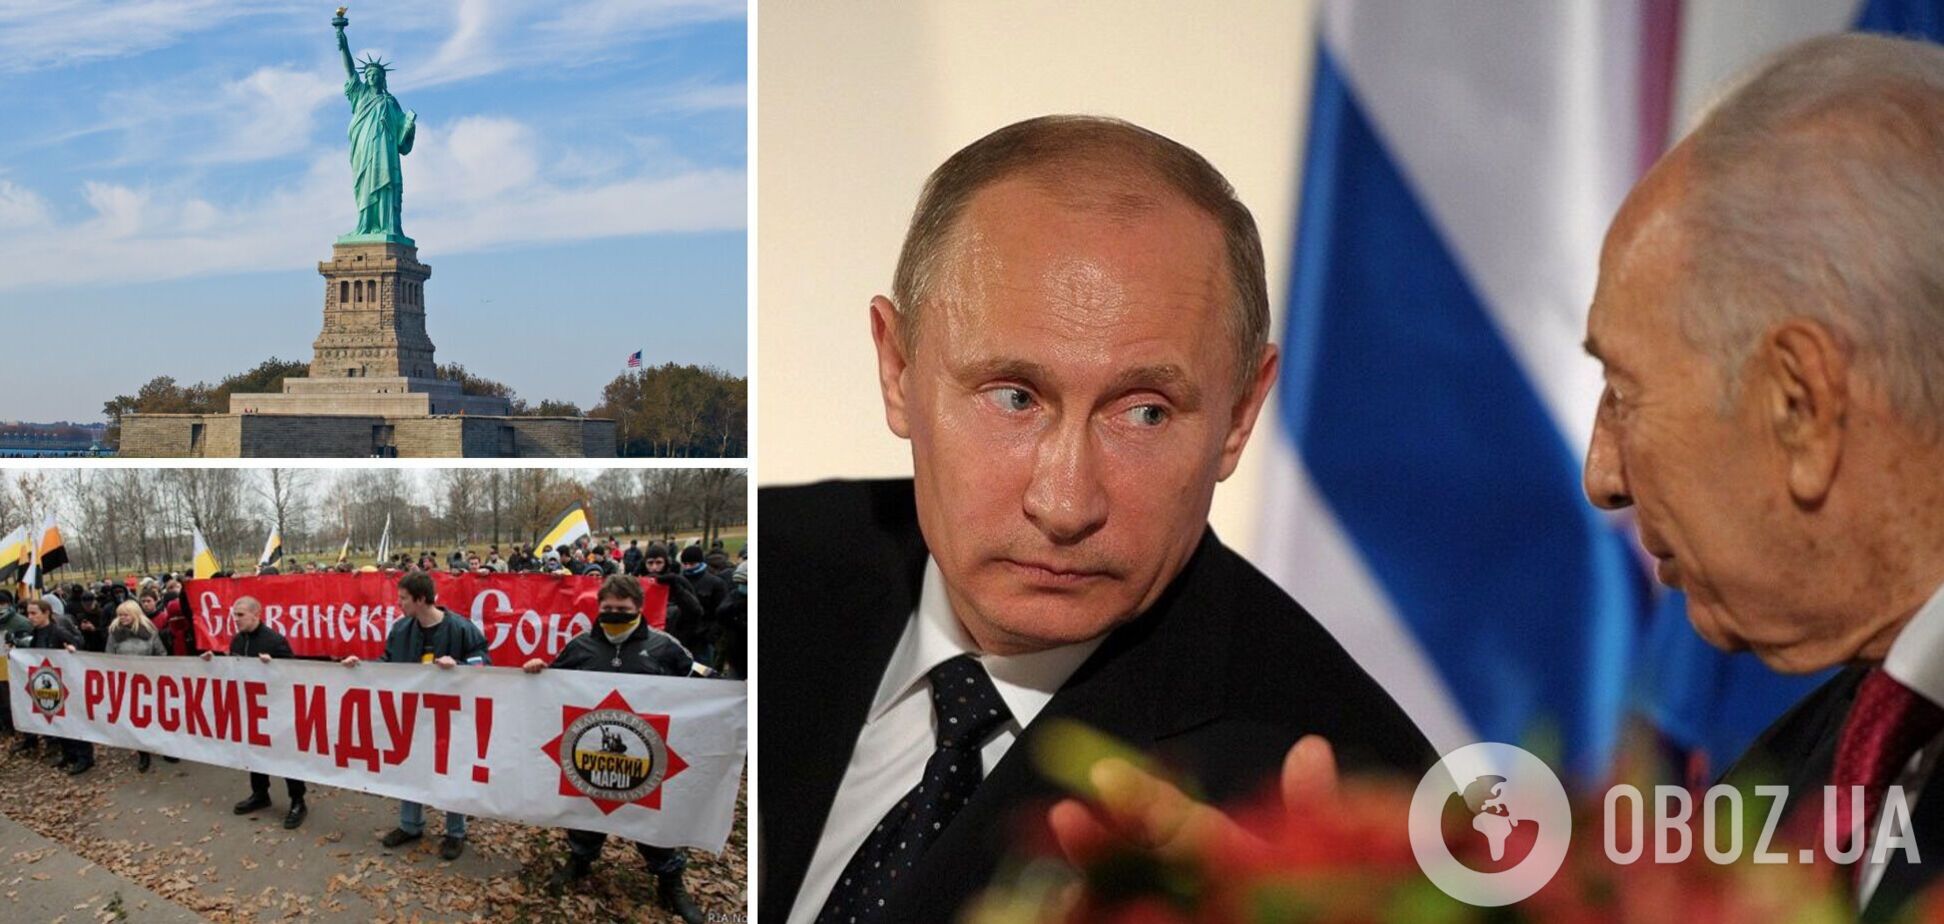 Розмова з Путіним, або Чому Америка приречена на перемогу, а Росія – програє